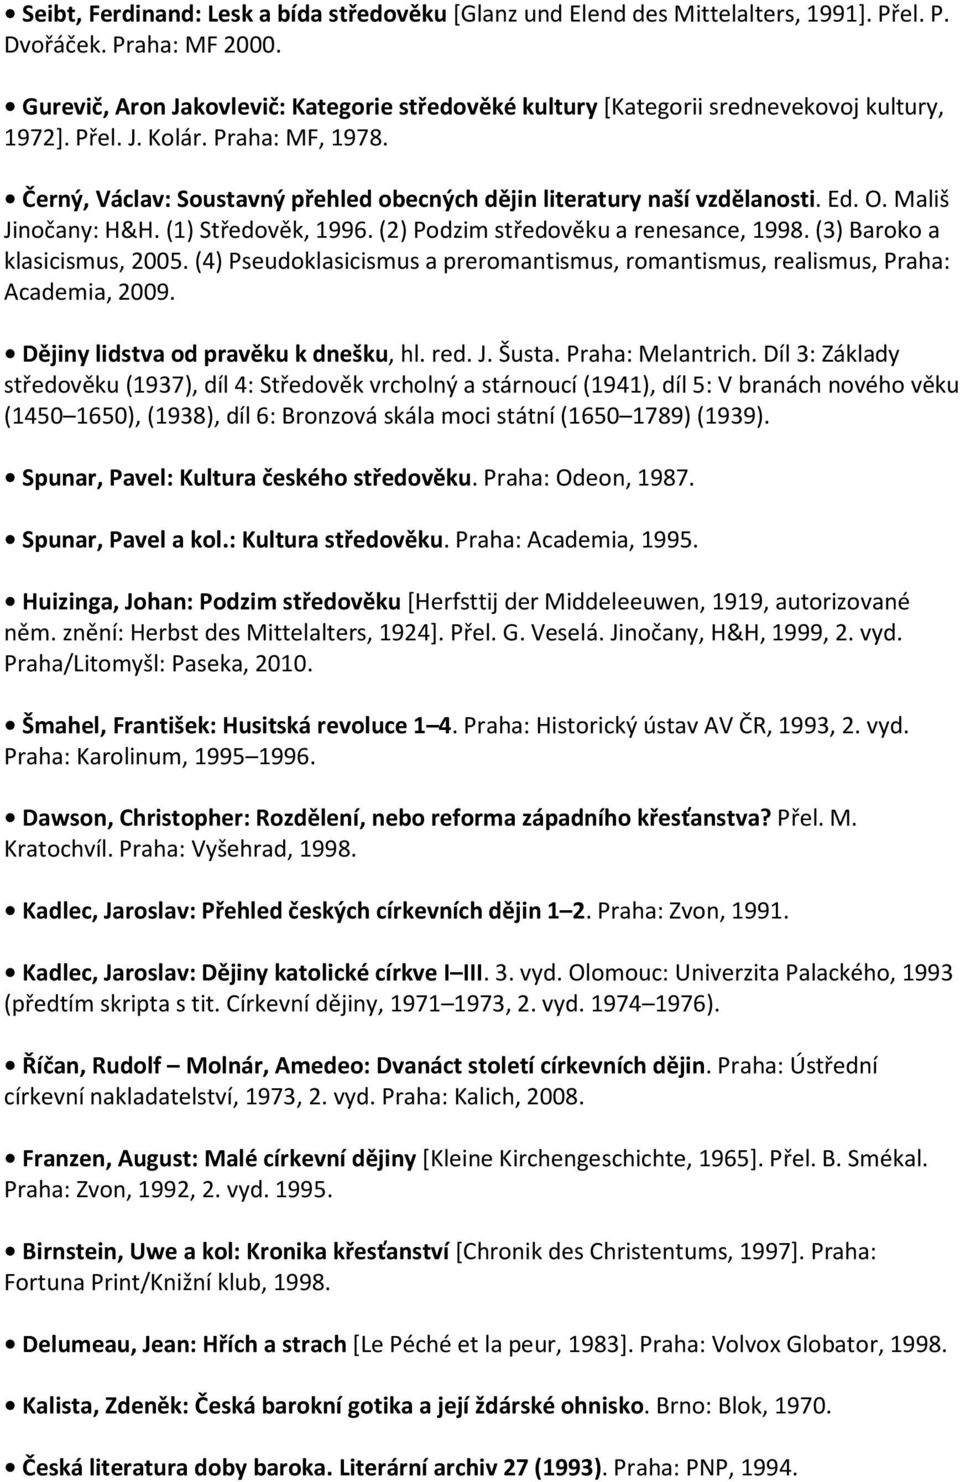 Černý, Václav: Soustavný přehled obecných dějin literatury naší vzdělanosti. Ed. O. Mališ Jinočany: H&H. (1) Středověk, 1996. (2) Podzim středověku a renesance, 1998. (3) Baroko a klasicismus, 2005.